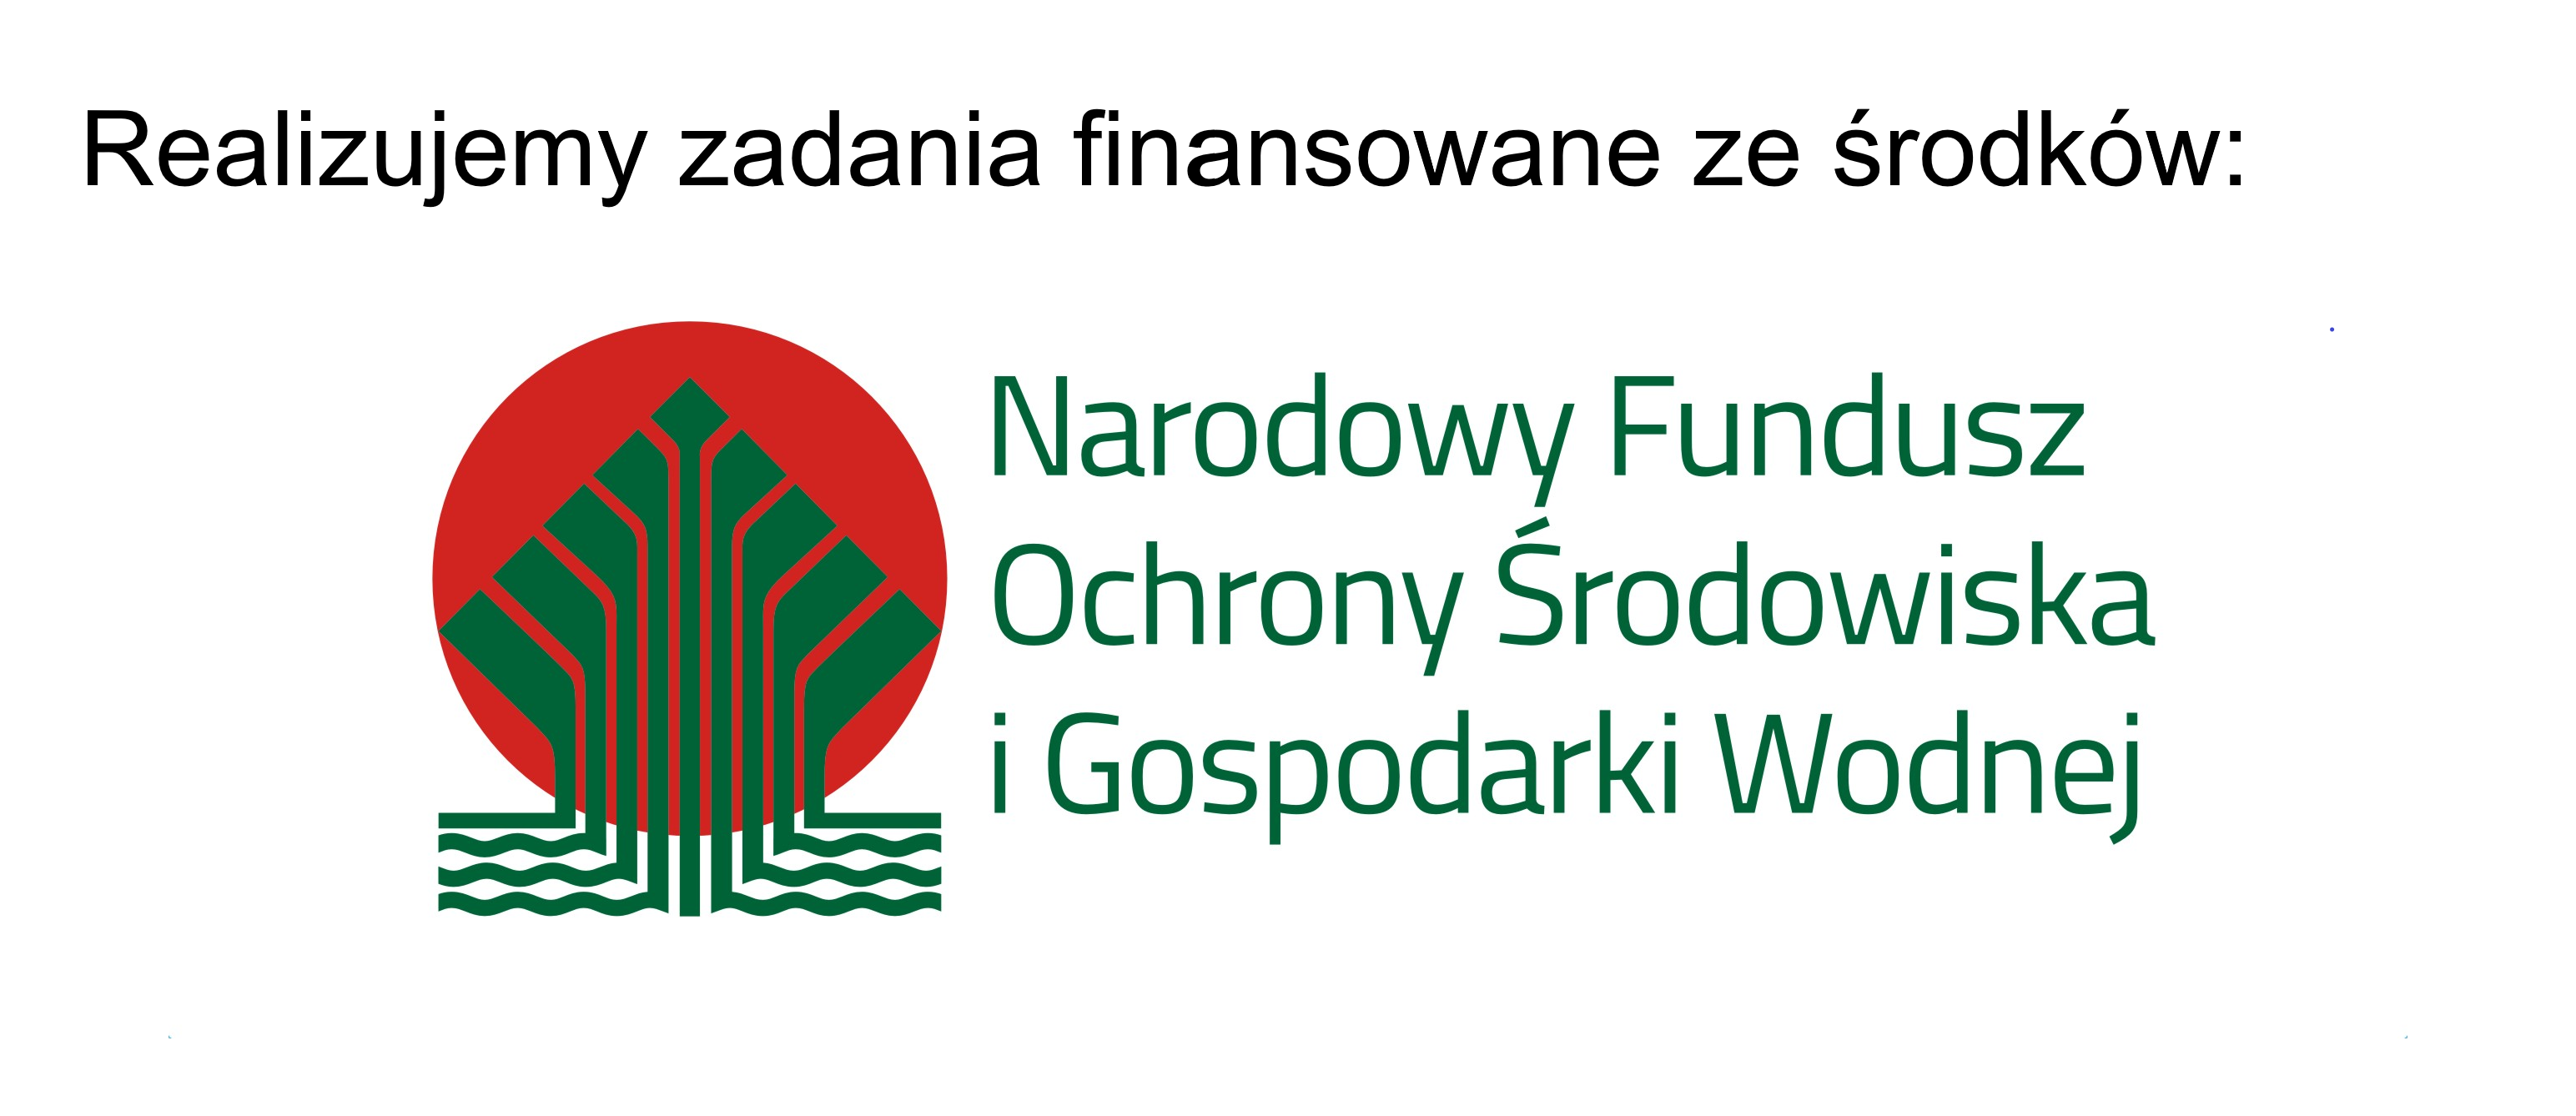 Realizujemy zadania finansowane ze środków NFOŚiGW - link do strony Funduszu